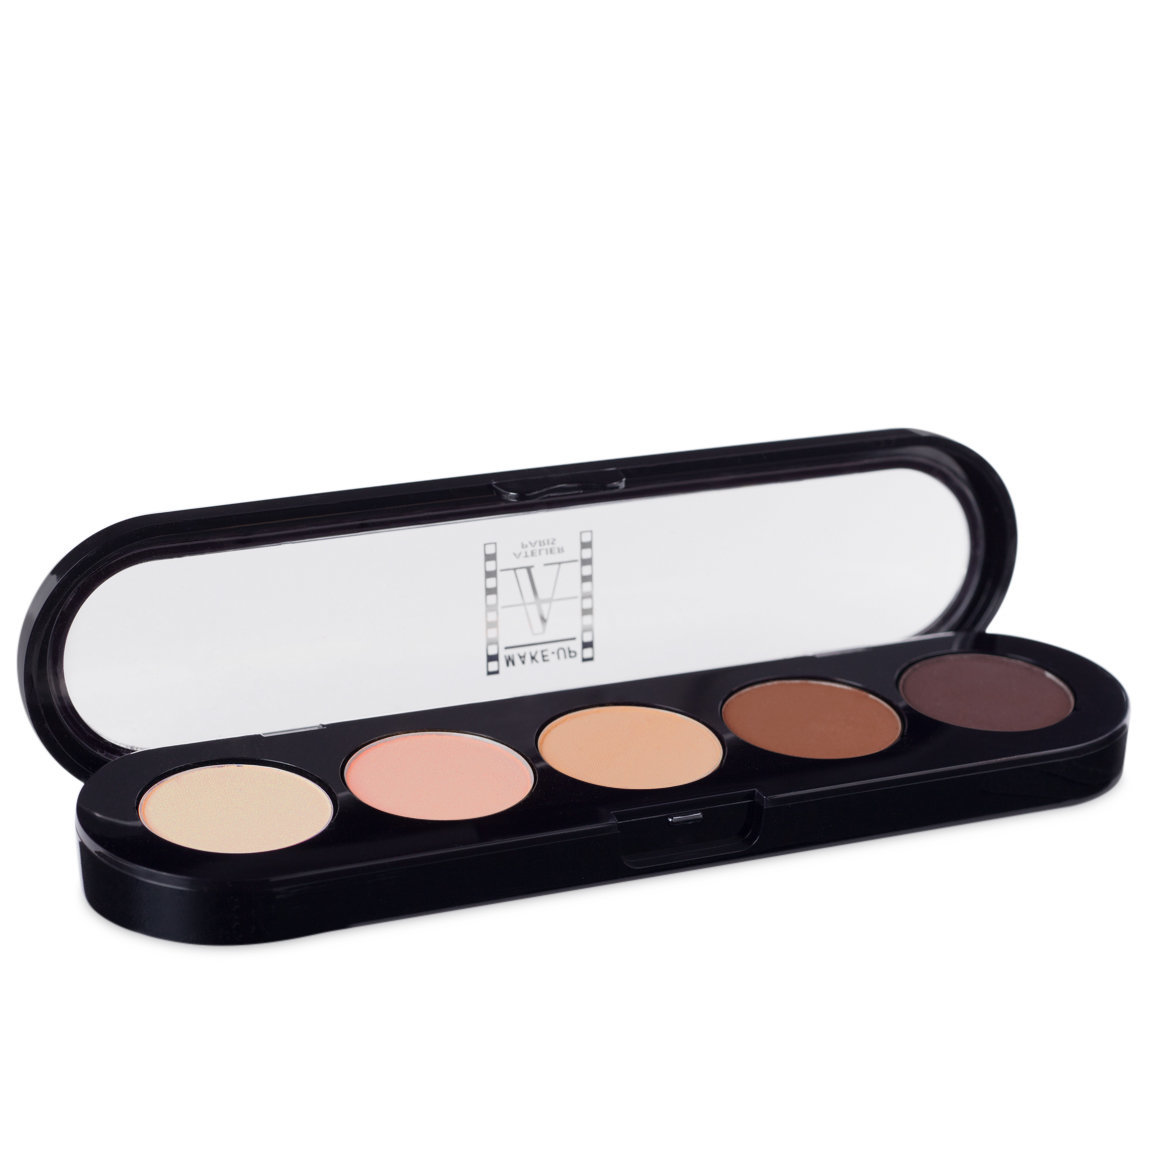 5 Eyeshadow Palette – T22 Natural Chestnut